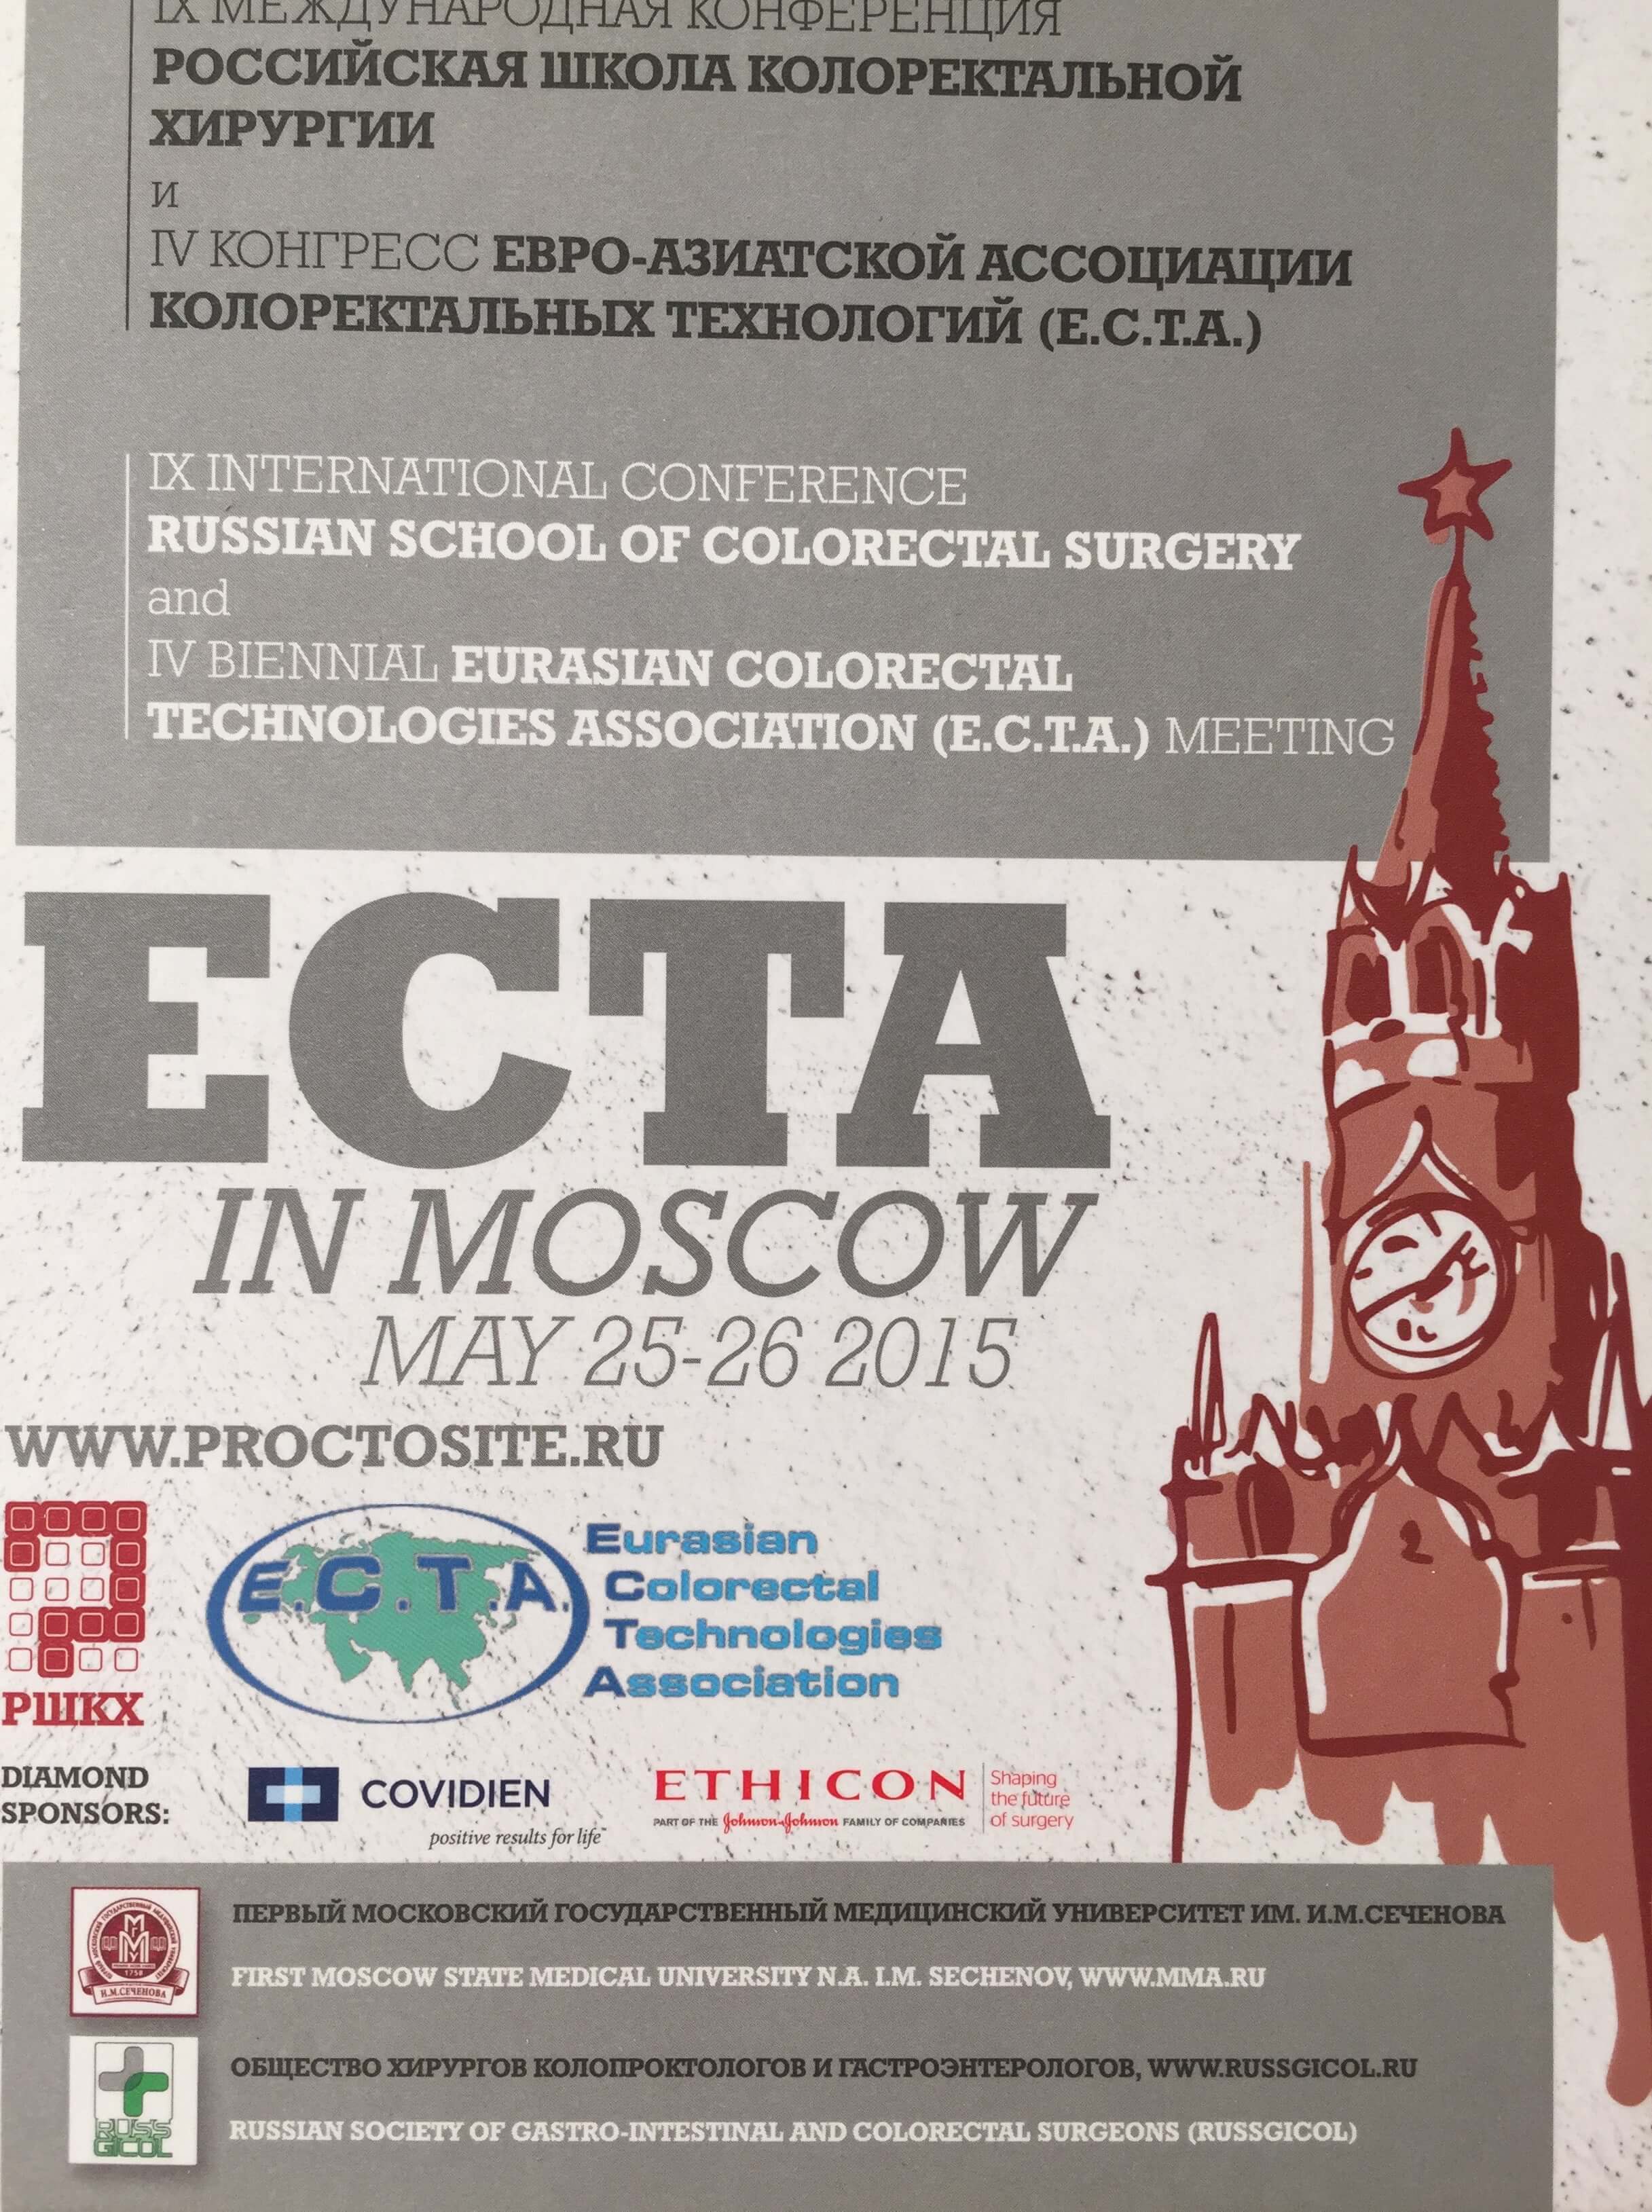 9 международная конференция «Российская школа колоректальной хирургии и 4-й конгресс Евро-азиатской ассоциации колоректальных технологий (E.C.T.A.)» (Москва, 25-26 мая 2015 года)